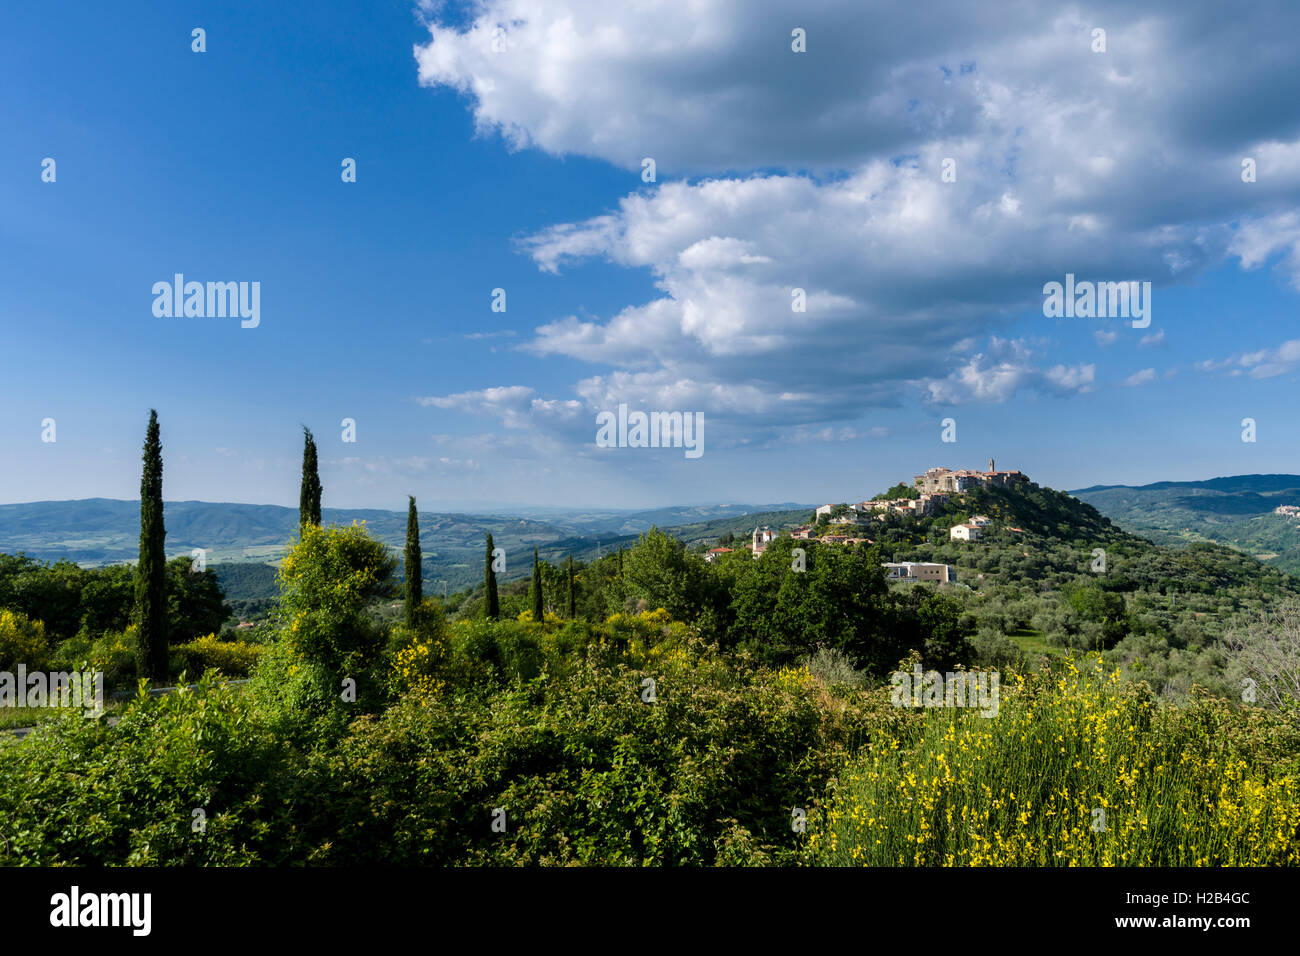 Paysage typique de la Toscane avec des collines et des cyprès, dans le dos une ville sur une colline, Montegiovi, Toscane, Italie Banque D'Images